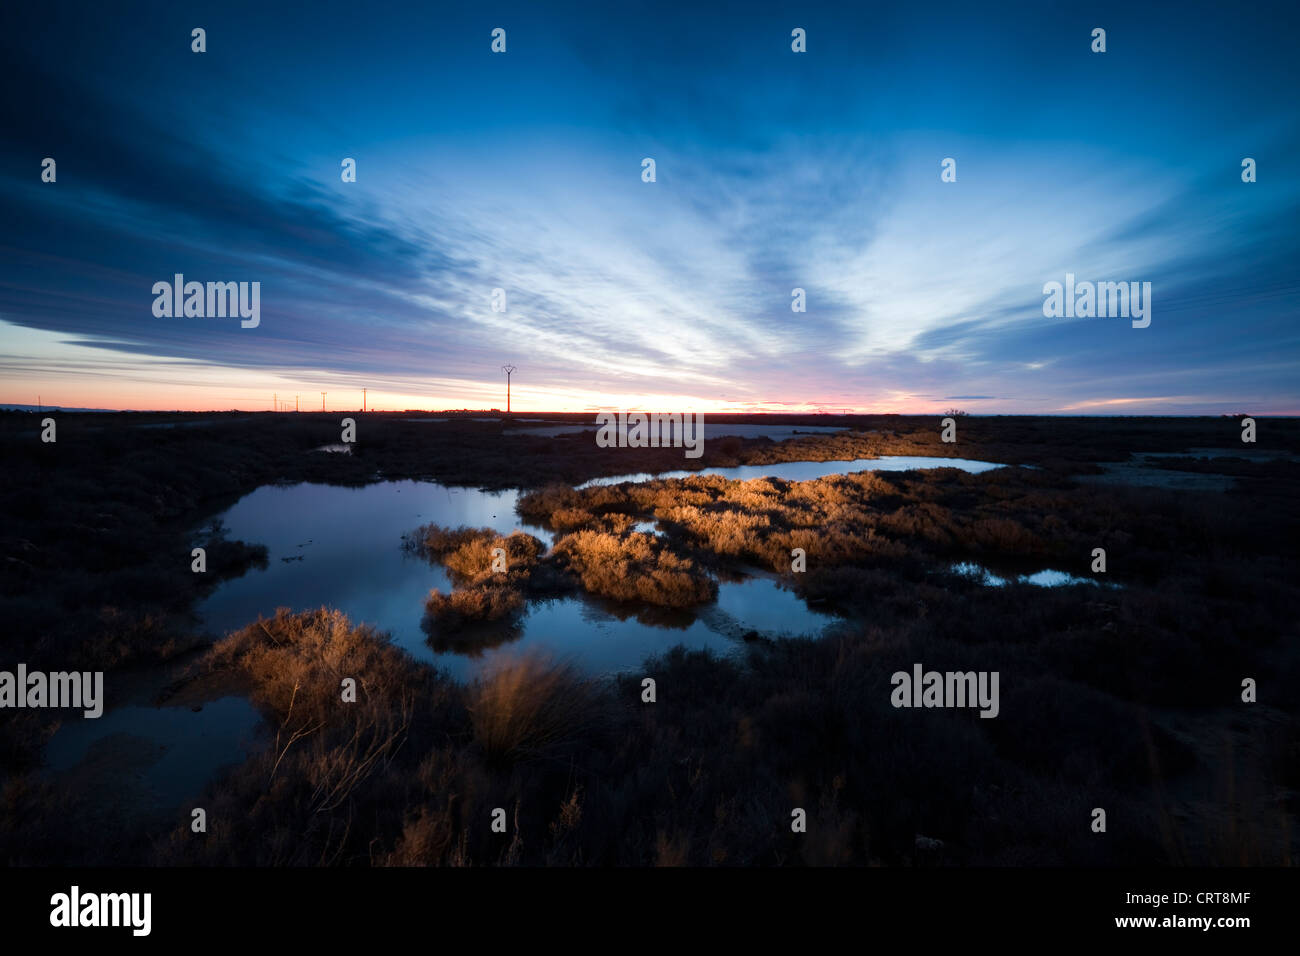 Sunrise at Delta del Ebro natural park Stock Photo